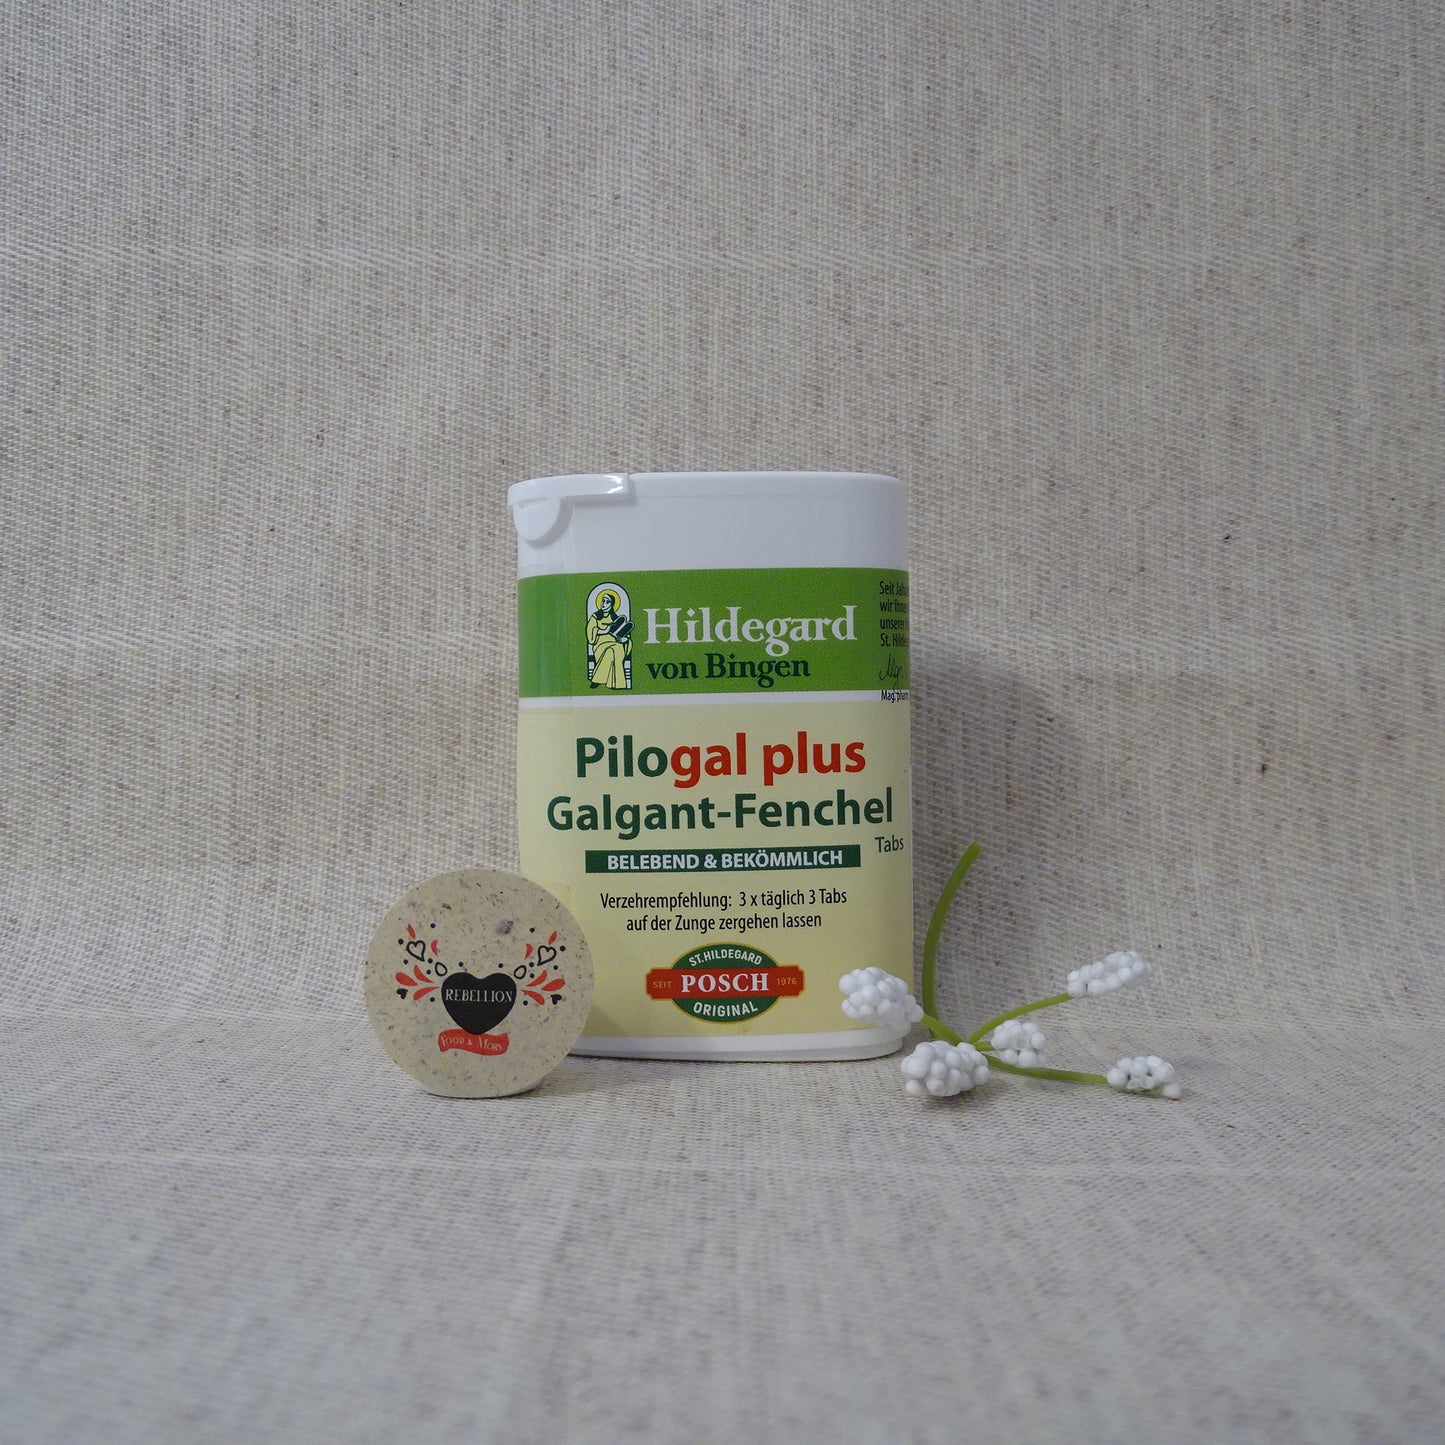 Pilogal Plus® Galgant Finocchio Tabs St.Hildegard Posch Confezione tascabile da 25 g